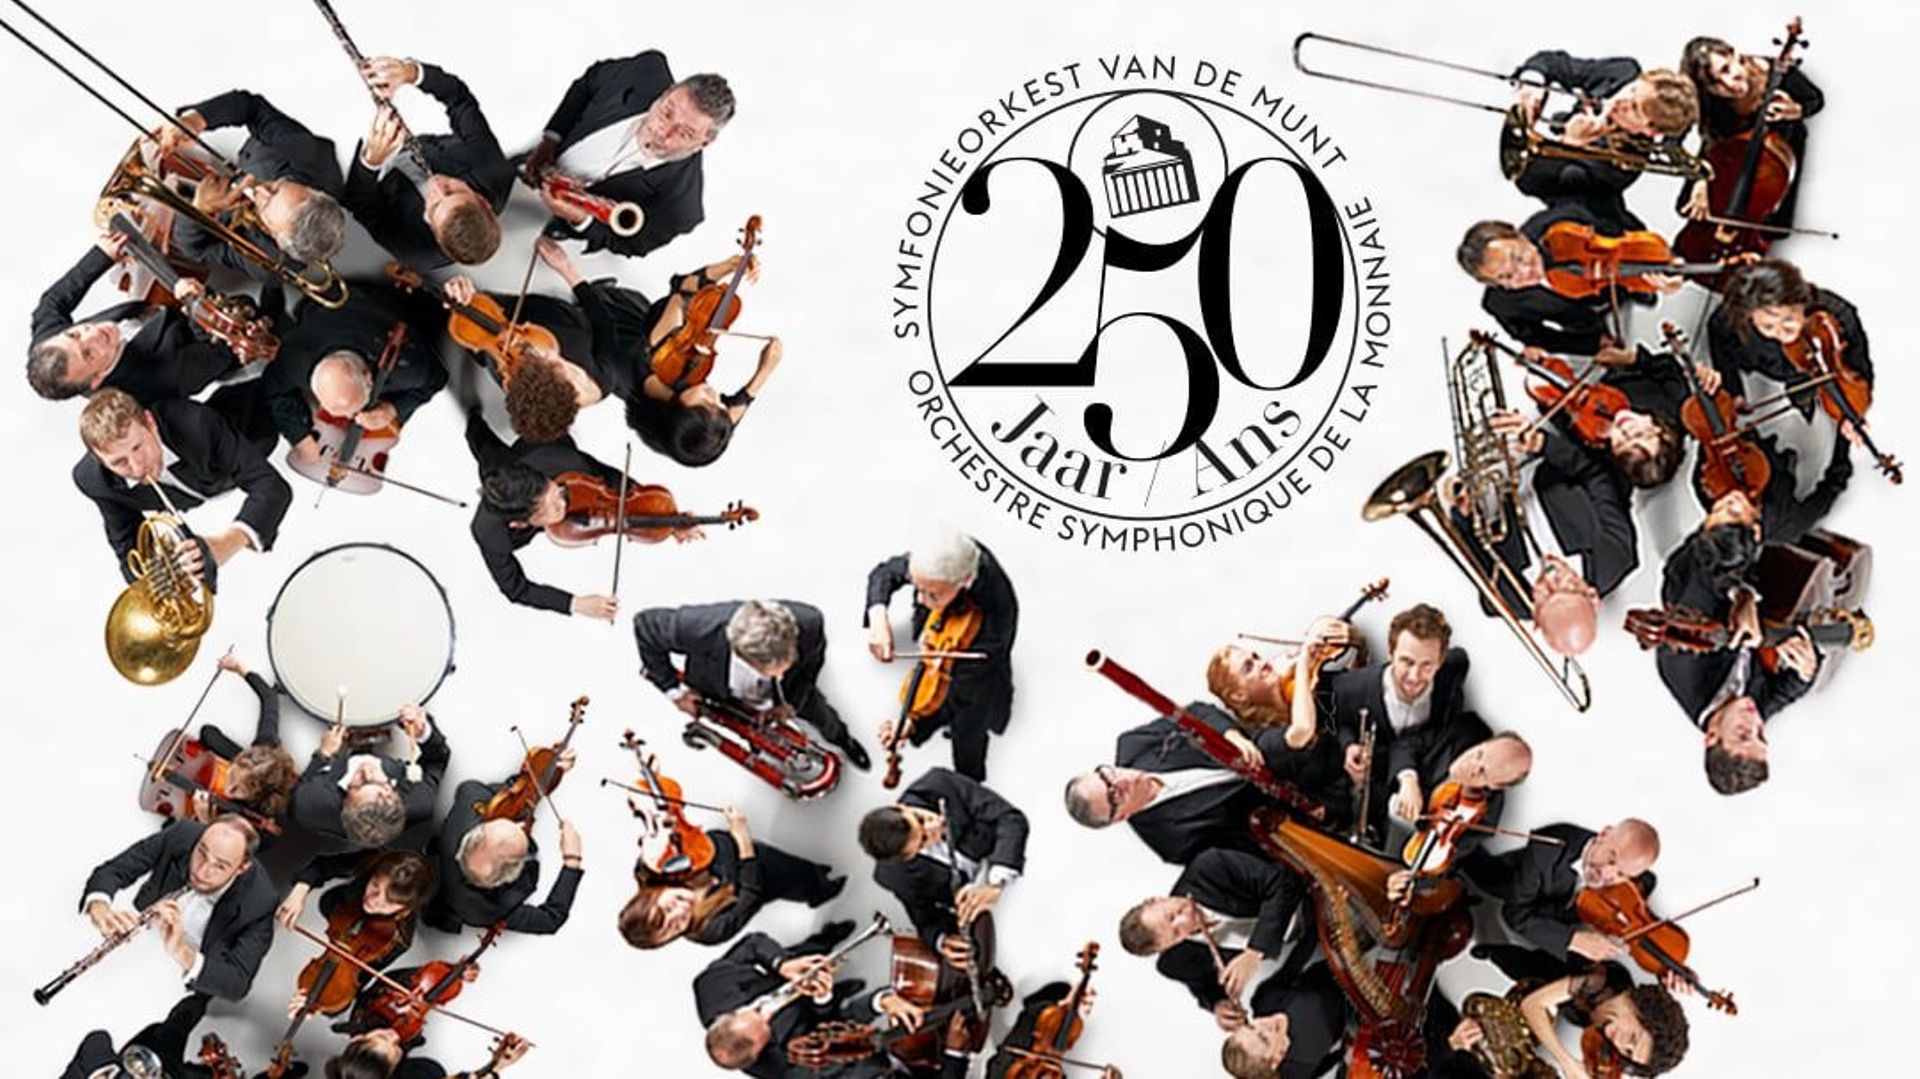 lorchestre-symphonique-de-la-monnaie-fete-ses-250-ans-avec-une-serie-de-concerts